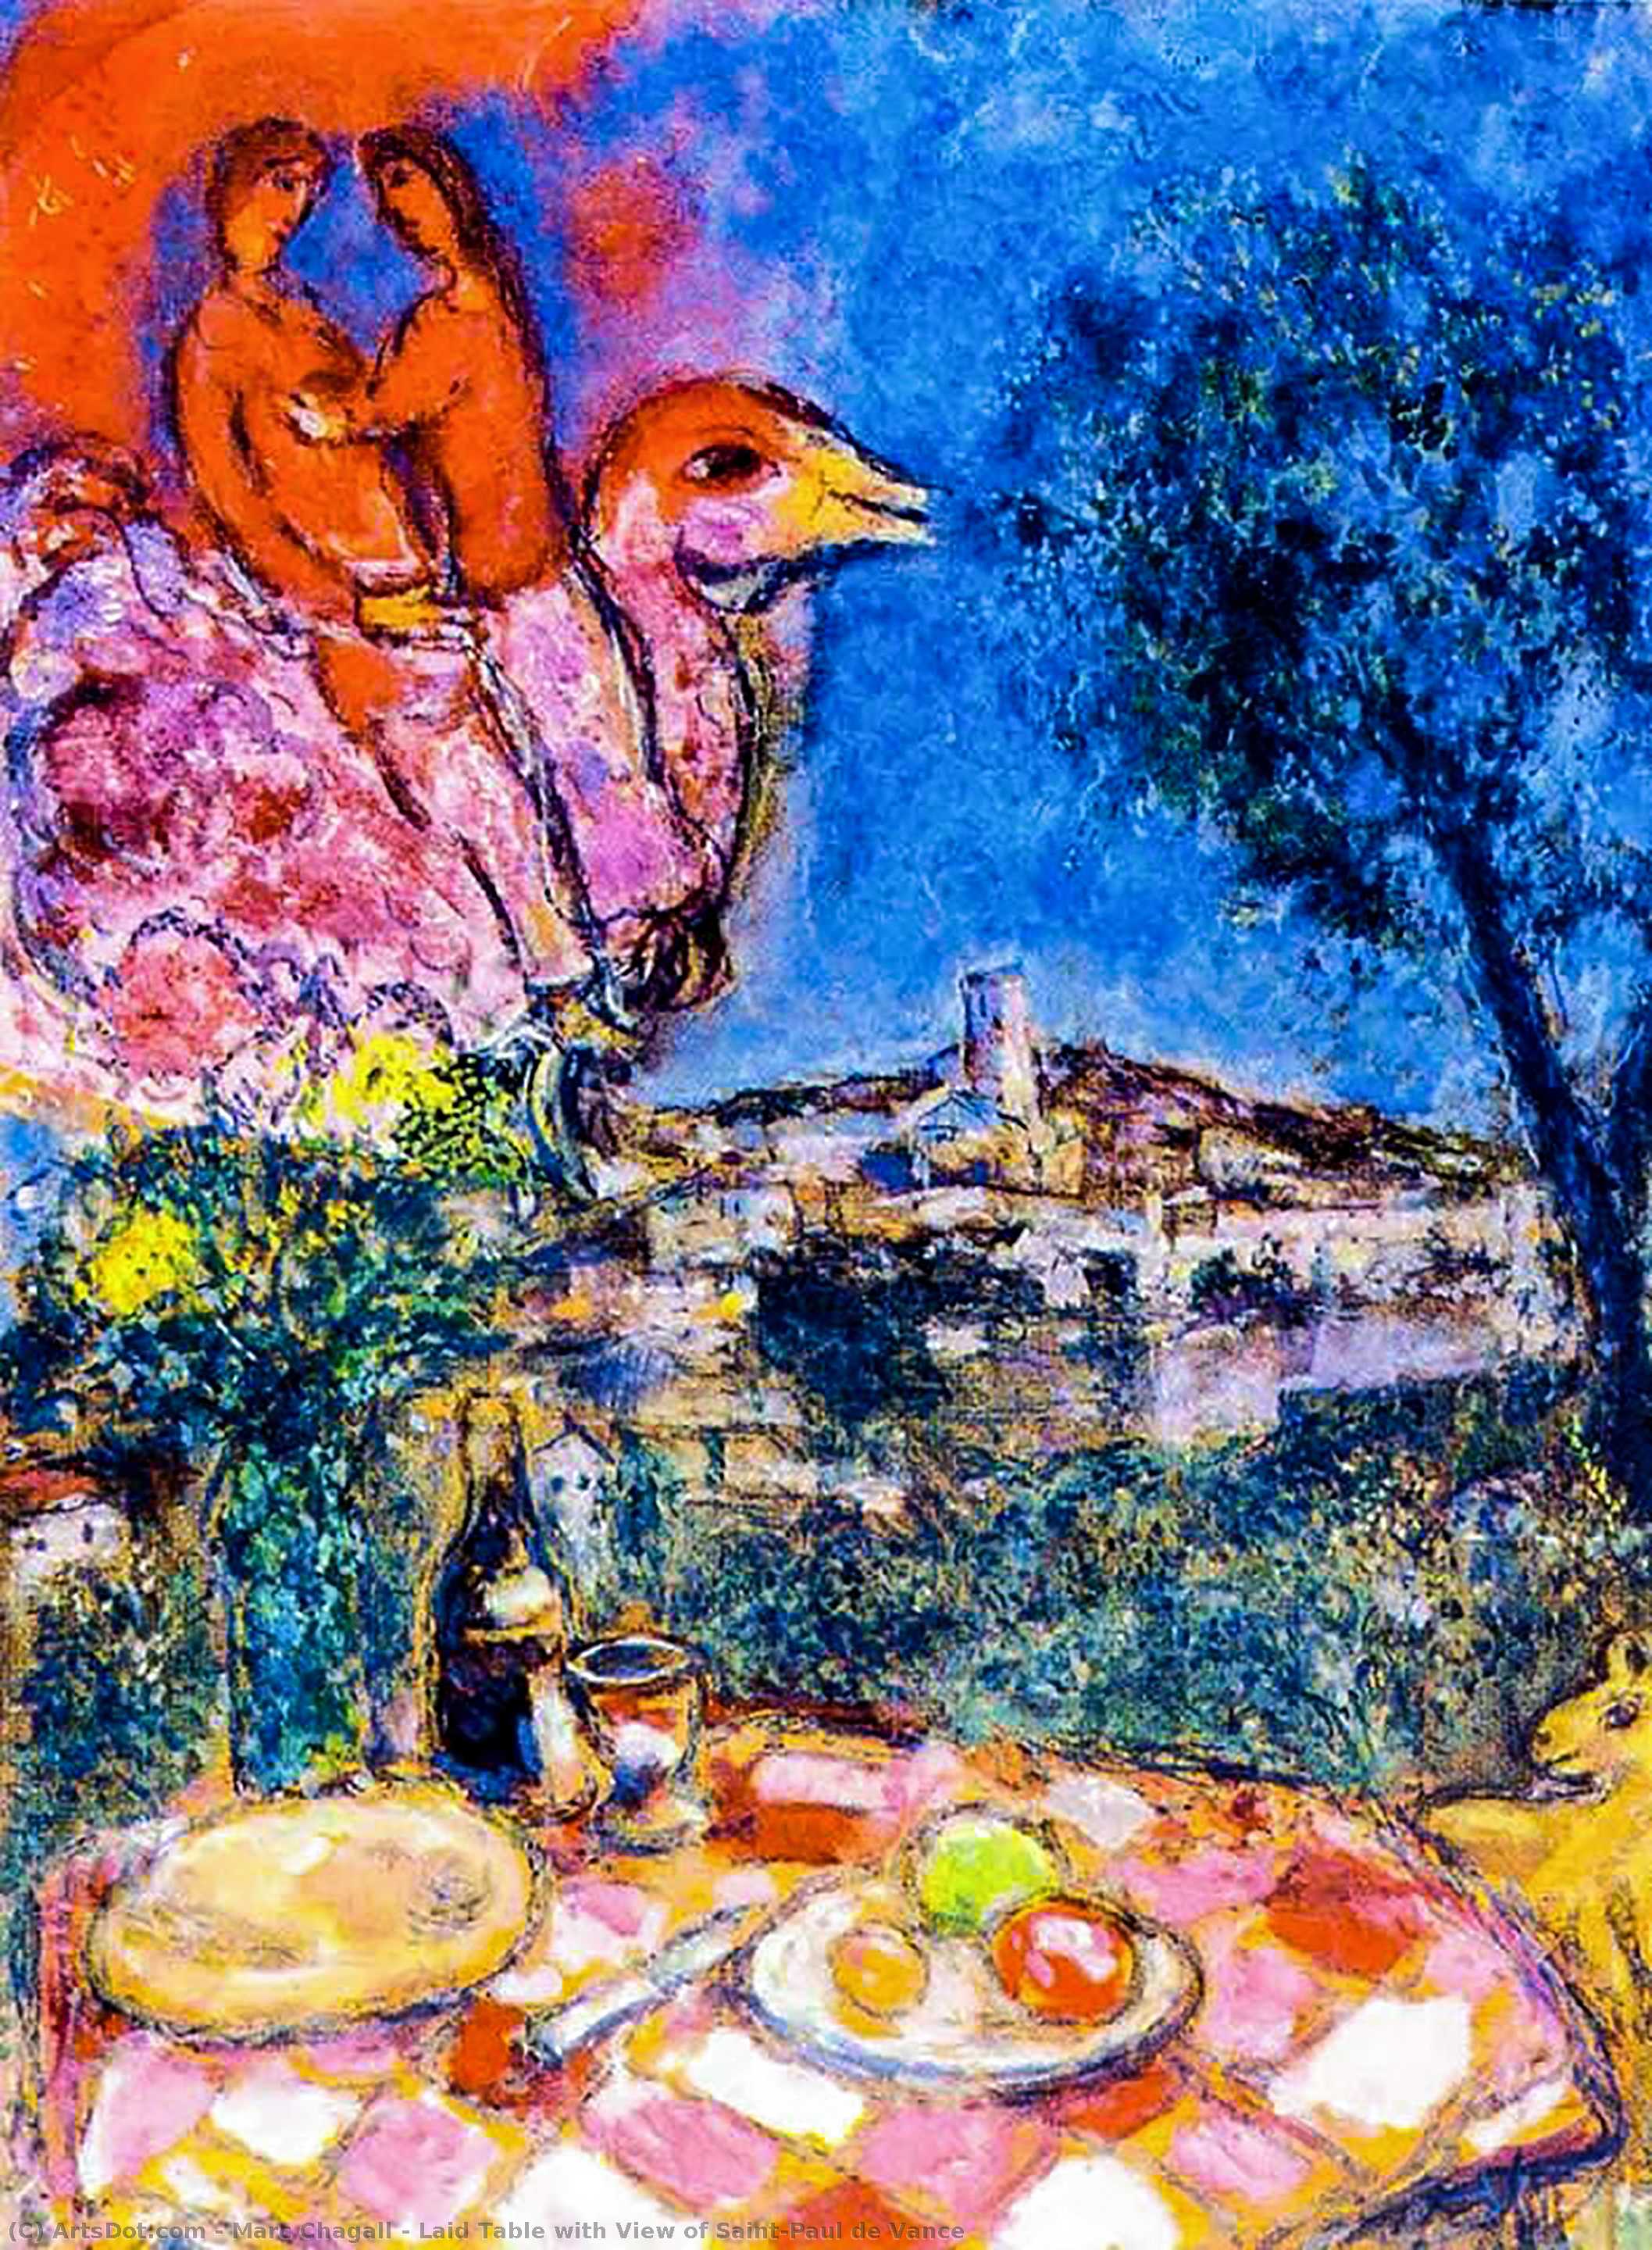 WikiOO.org - Энциклопедия изобразительного искусства - Живопись, Картины  Marc Chagall - накладной стол с видом на Saint-Paul де ванс